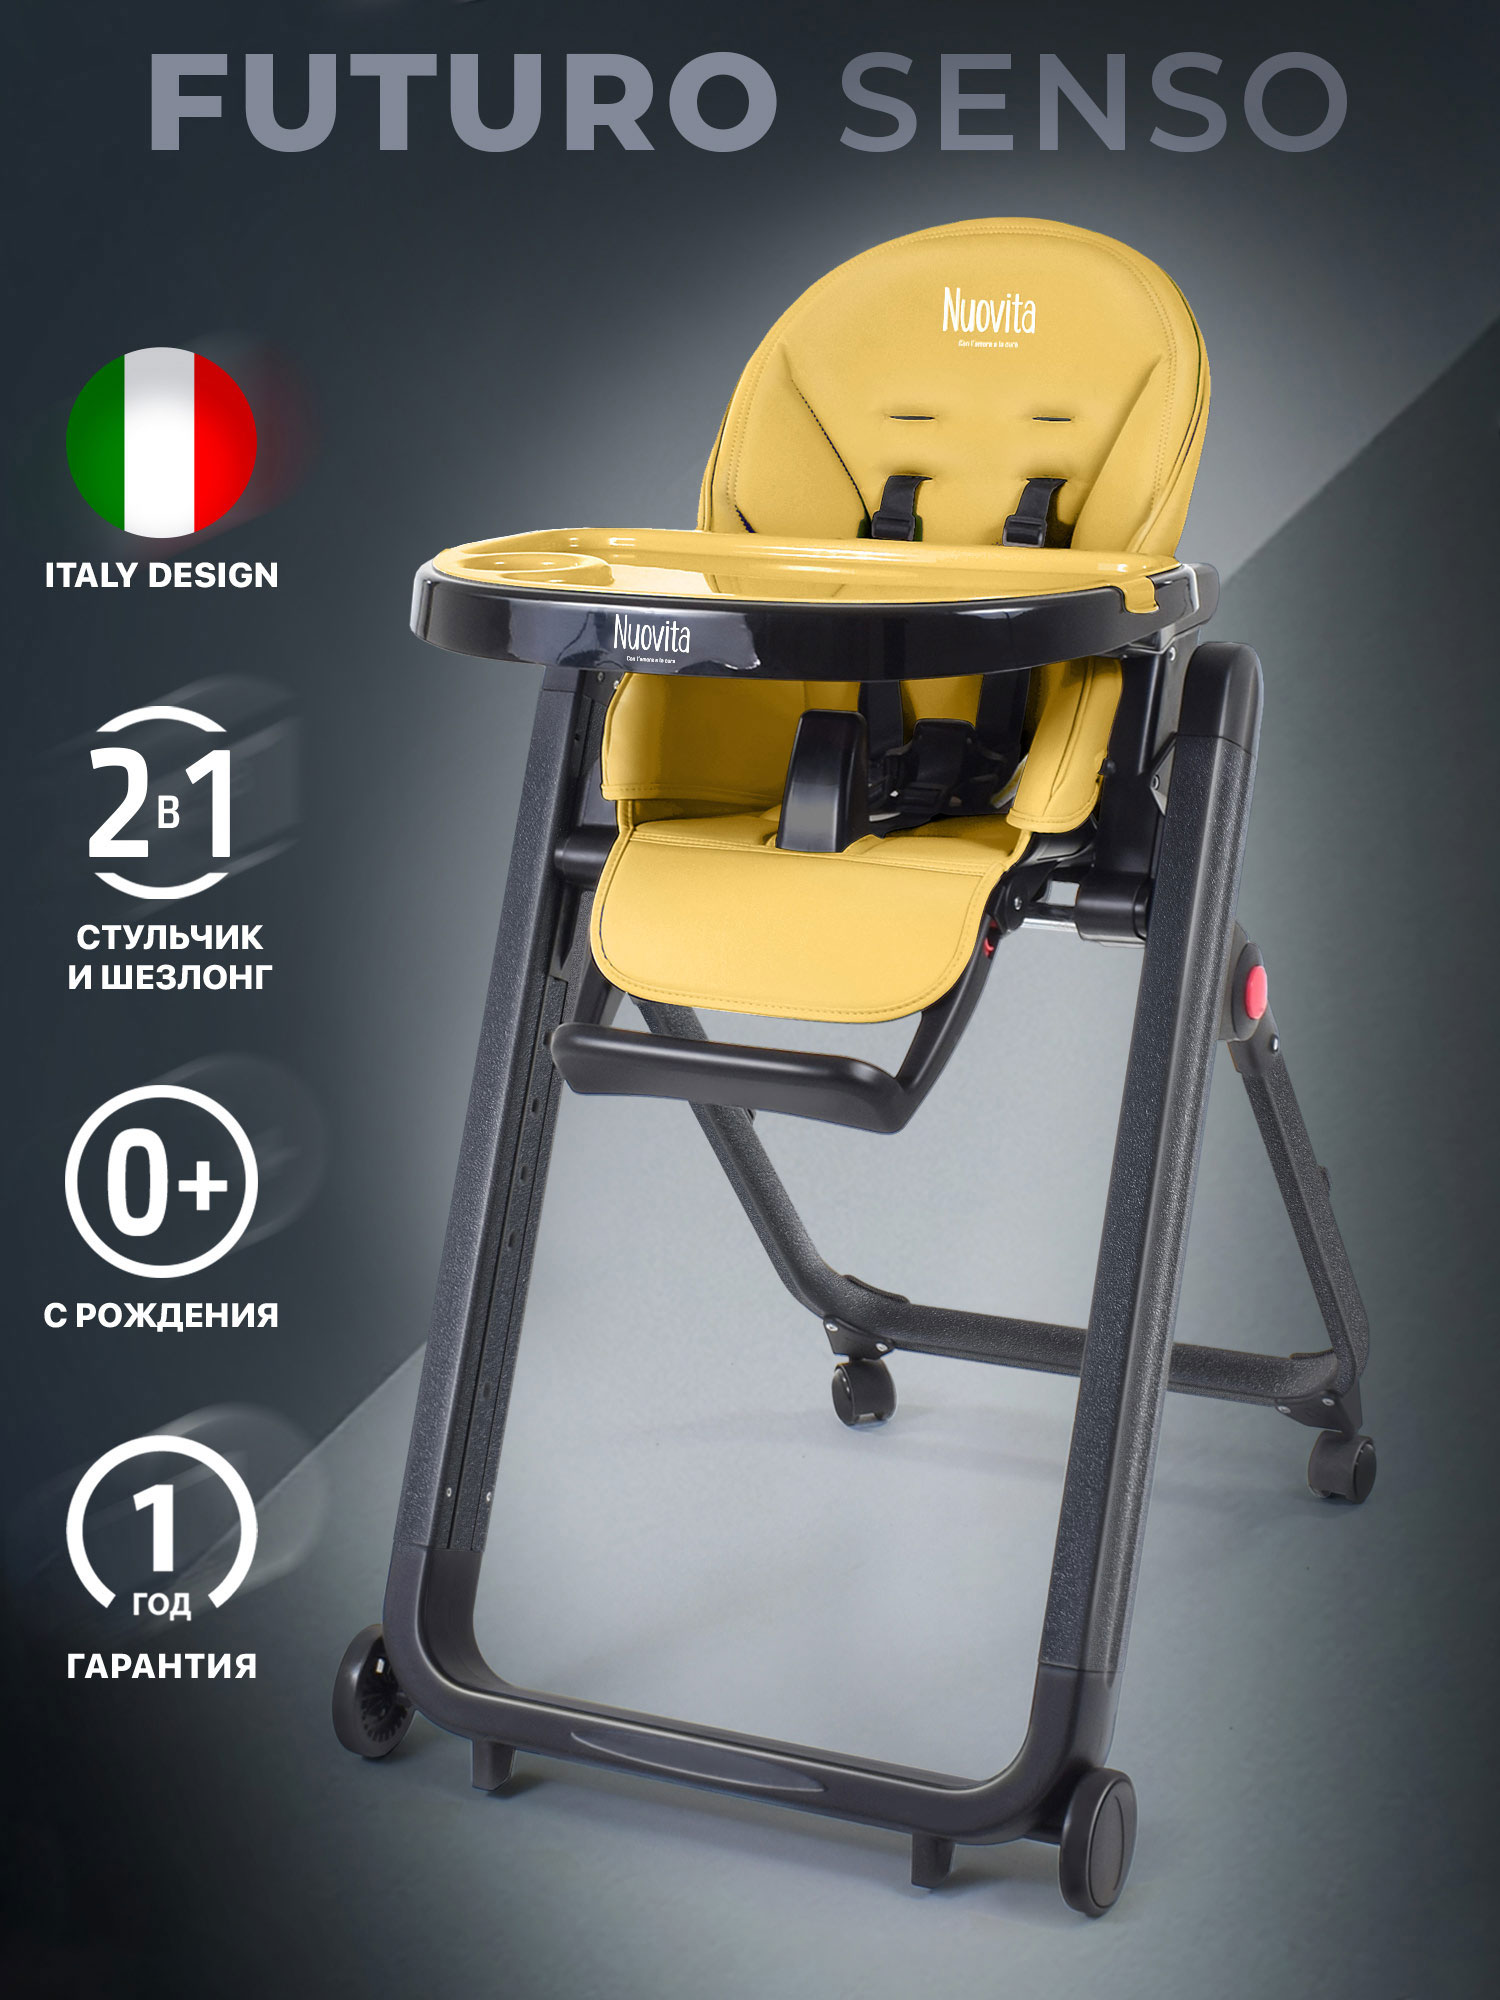 Стульчик для кормления Nuovita Futuro Senso Nero (Giallo/Желтый) стульчик для кормления nuovita futuro nero blu голубой